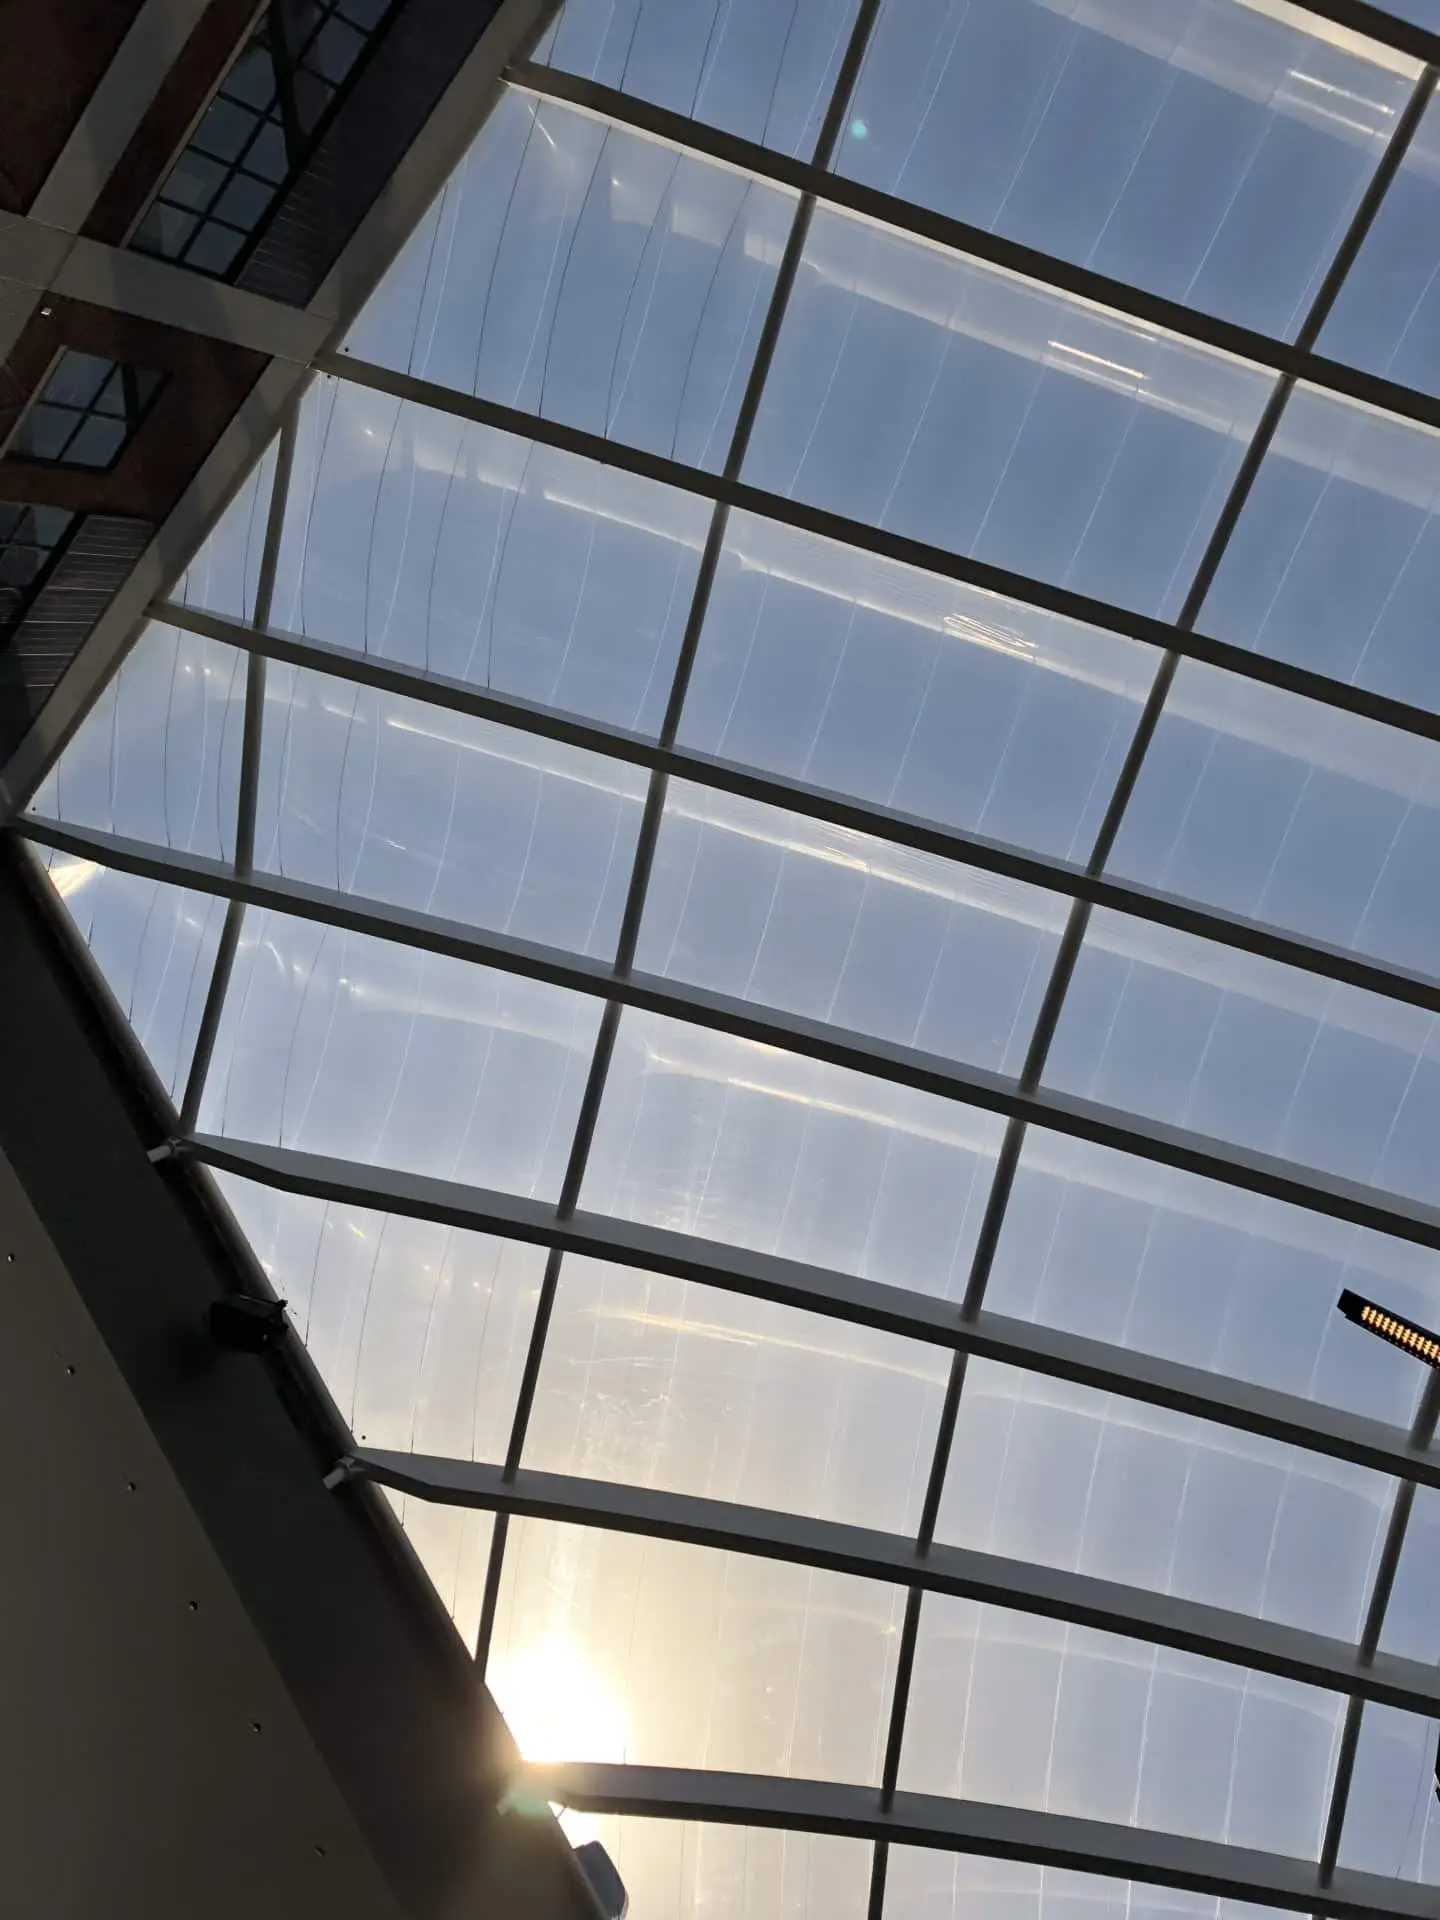 Über 4,000 m² des Texlon® ETFE-Systems bringen durch Transparenz Licht in das Gebäude und bieten eine komfortable Akustik für die Besucher.